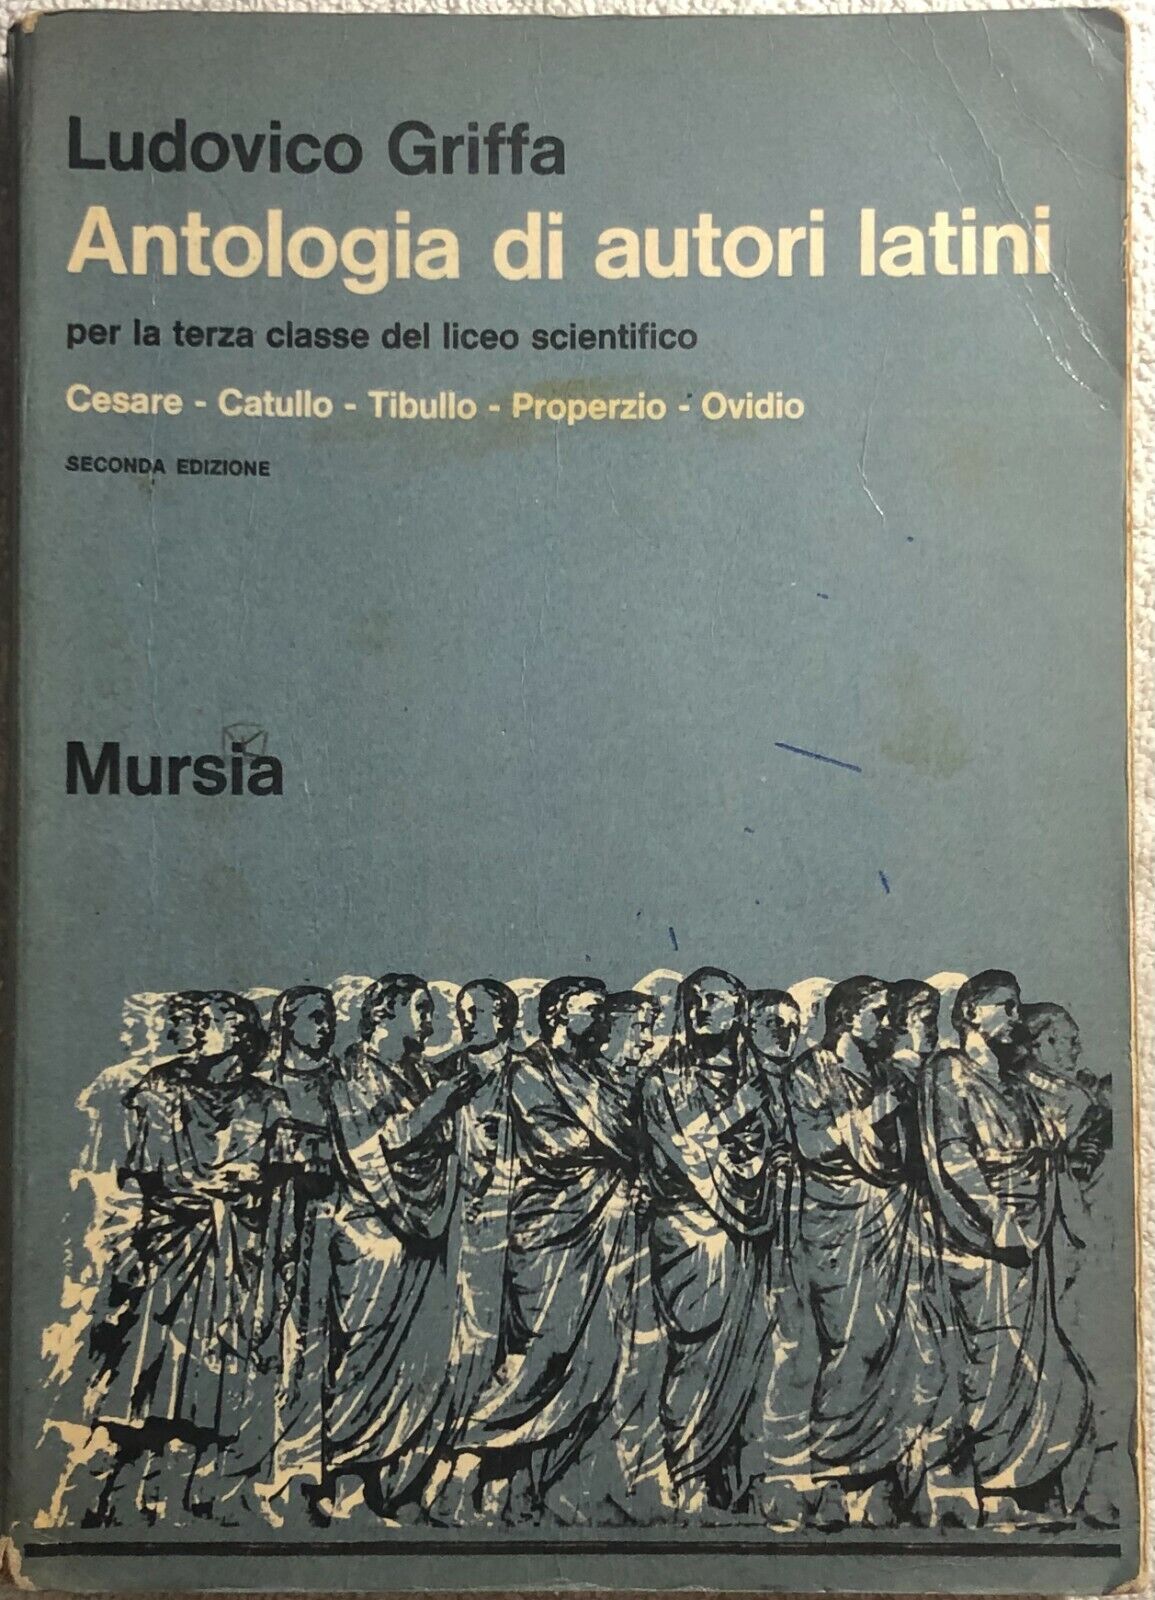 Antologia di autori latini per la terza classe del liceo scientifico di Ludovico